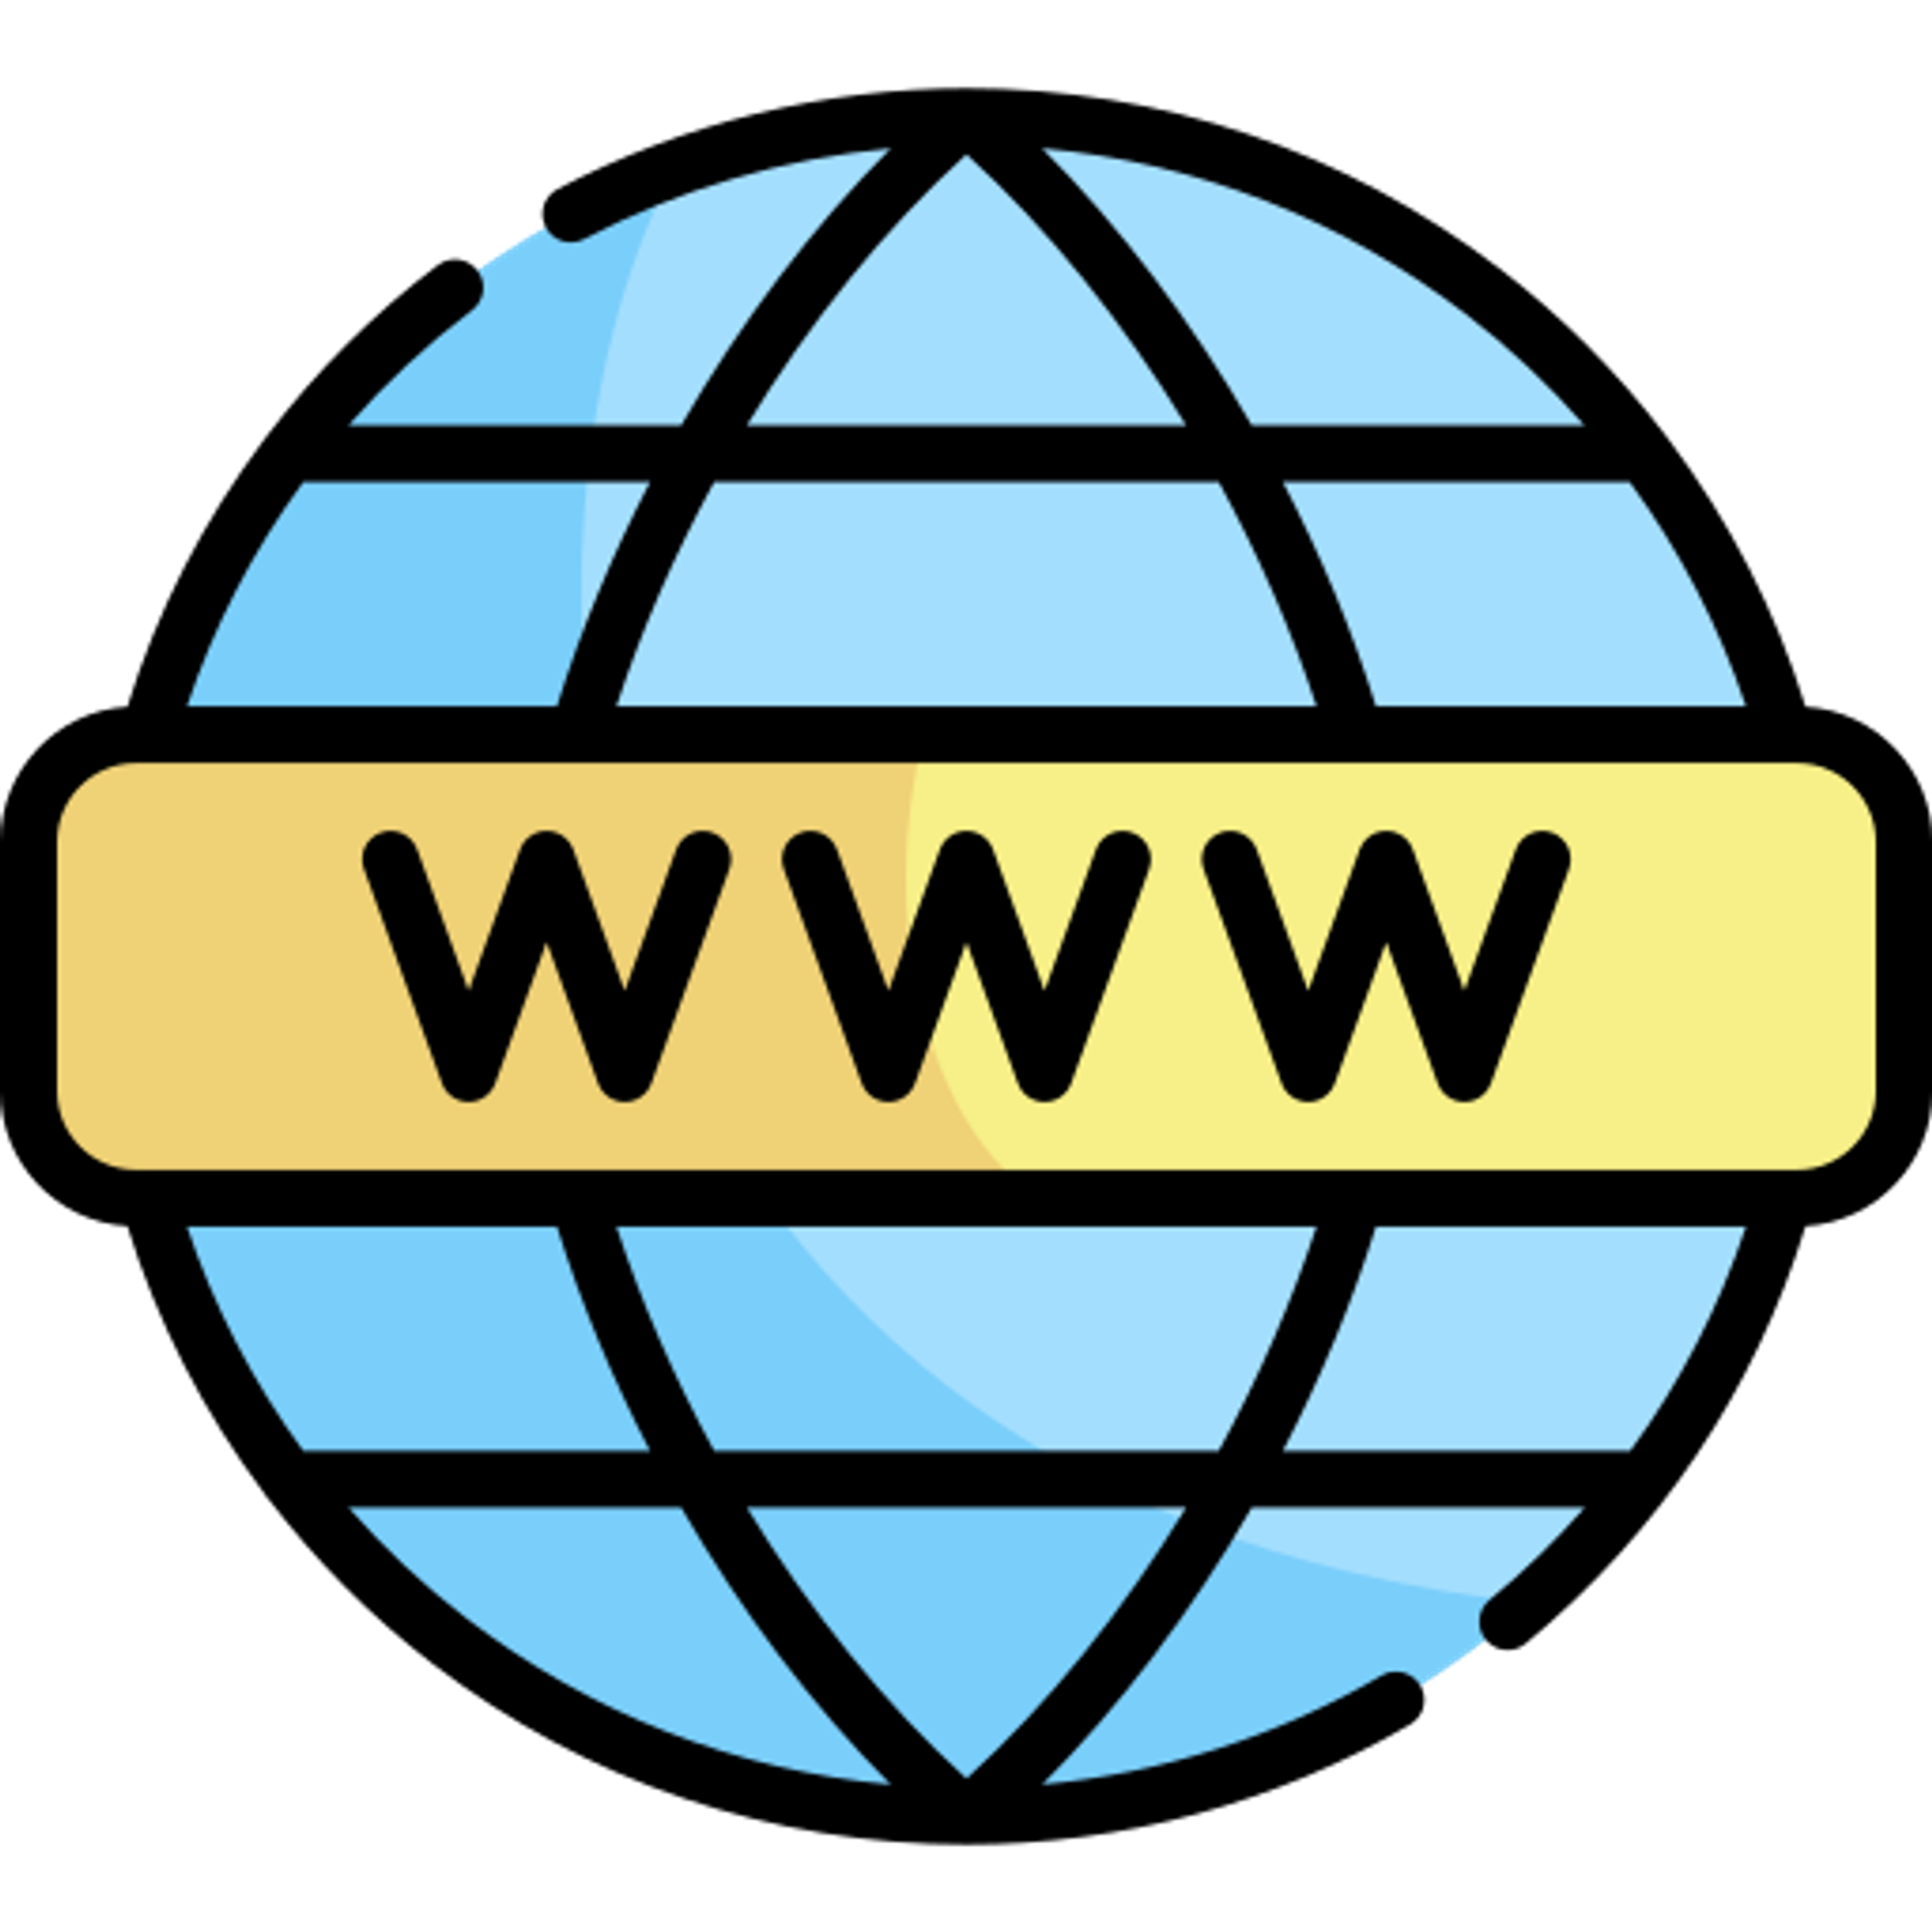 Agilytic worldwide web (sort of)